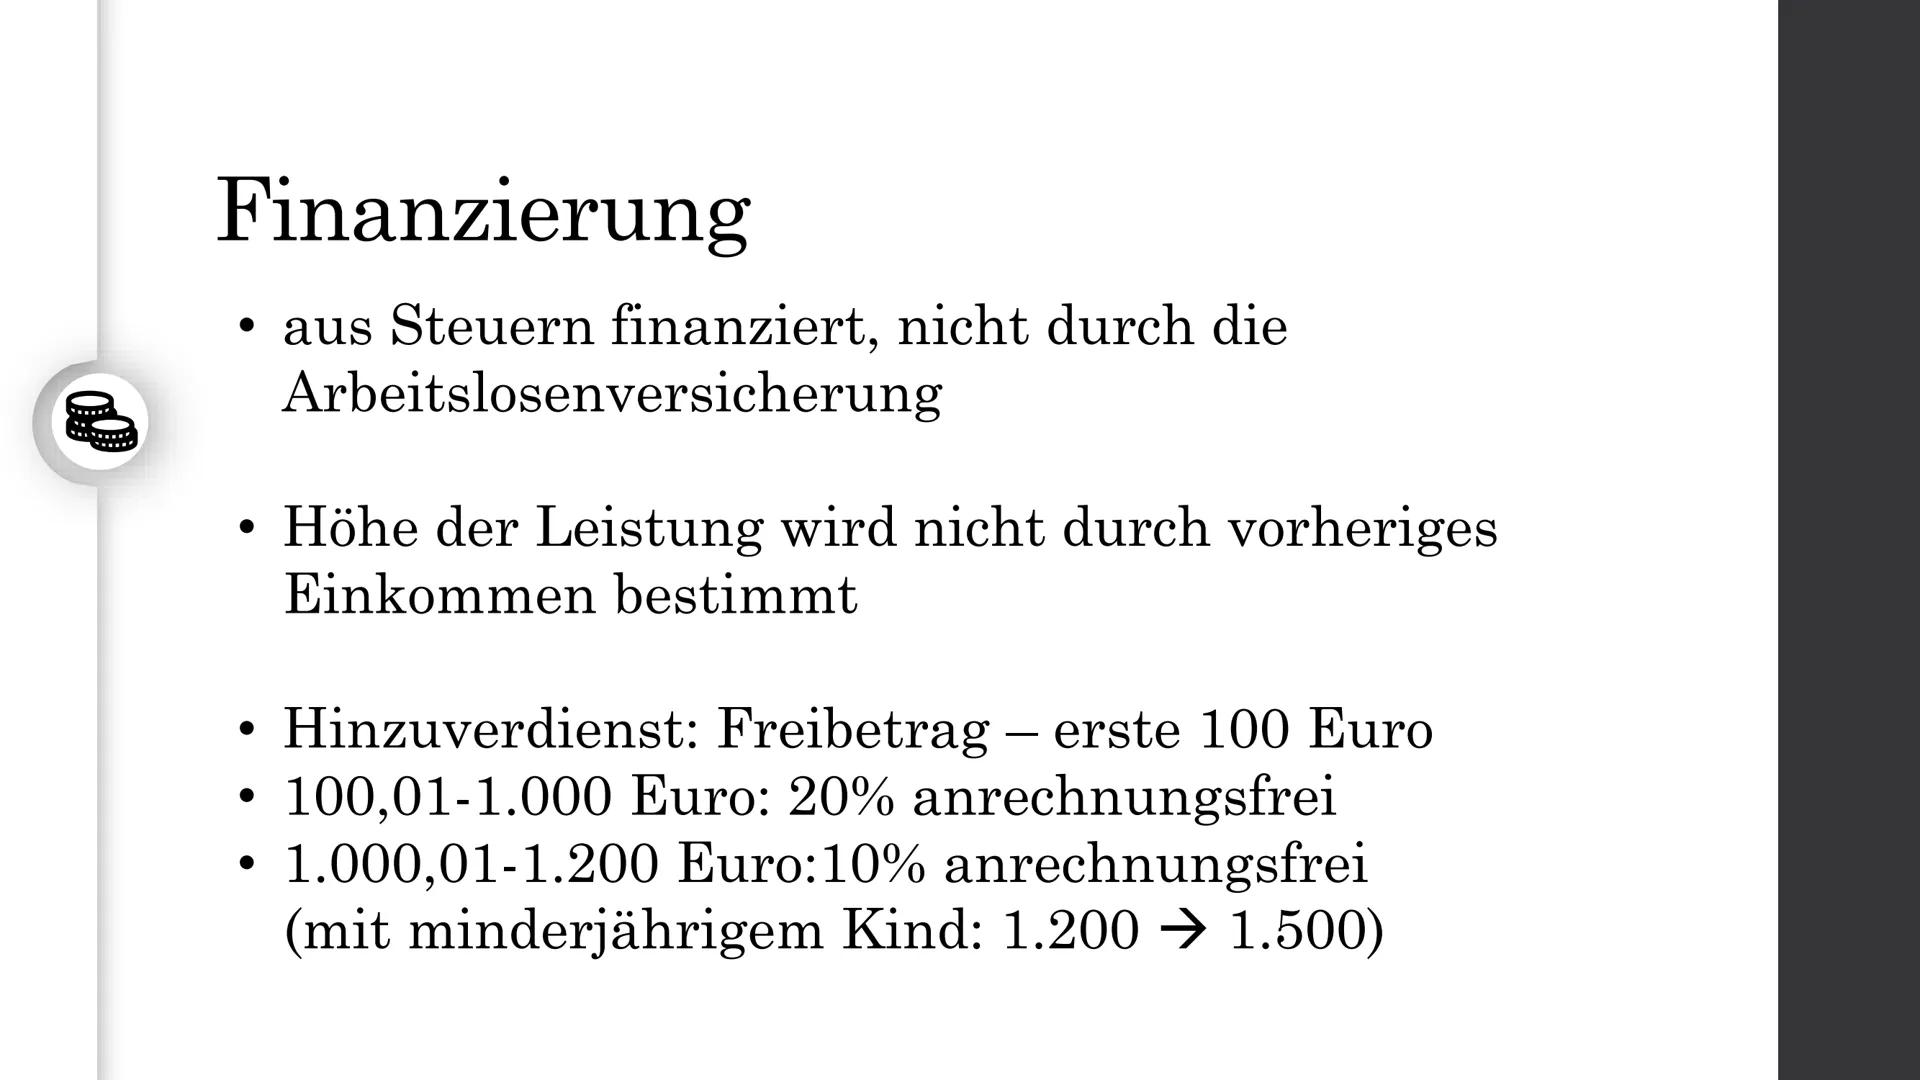 Arbeitslosengeld II -
(Hartz IV)
Nina Heuermann Gliederung
• Definition
• Bedingungen
●
· Finanzierung
• Zahlen & Fakten
●
• Verlauf der Reg